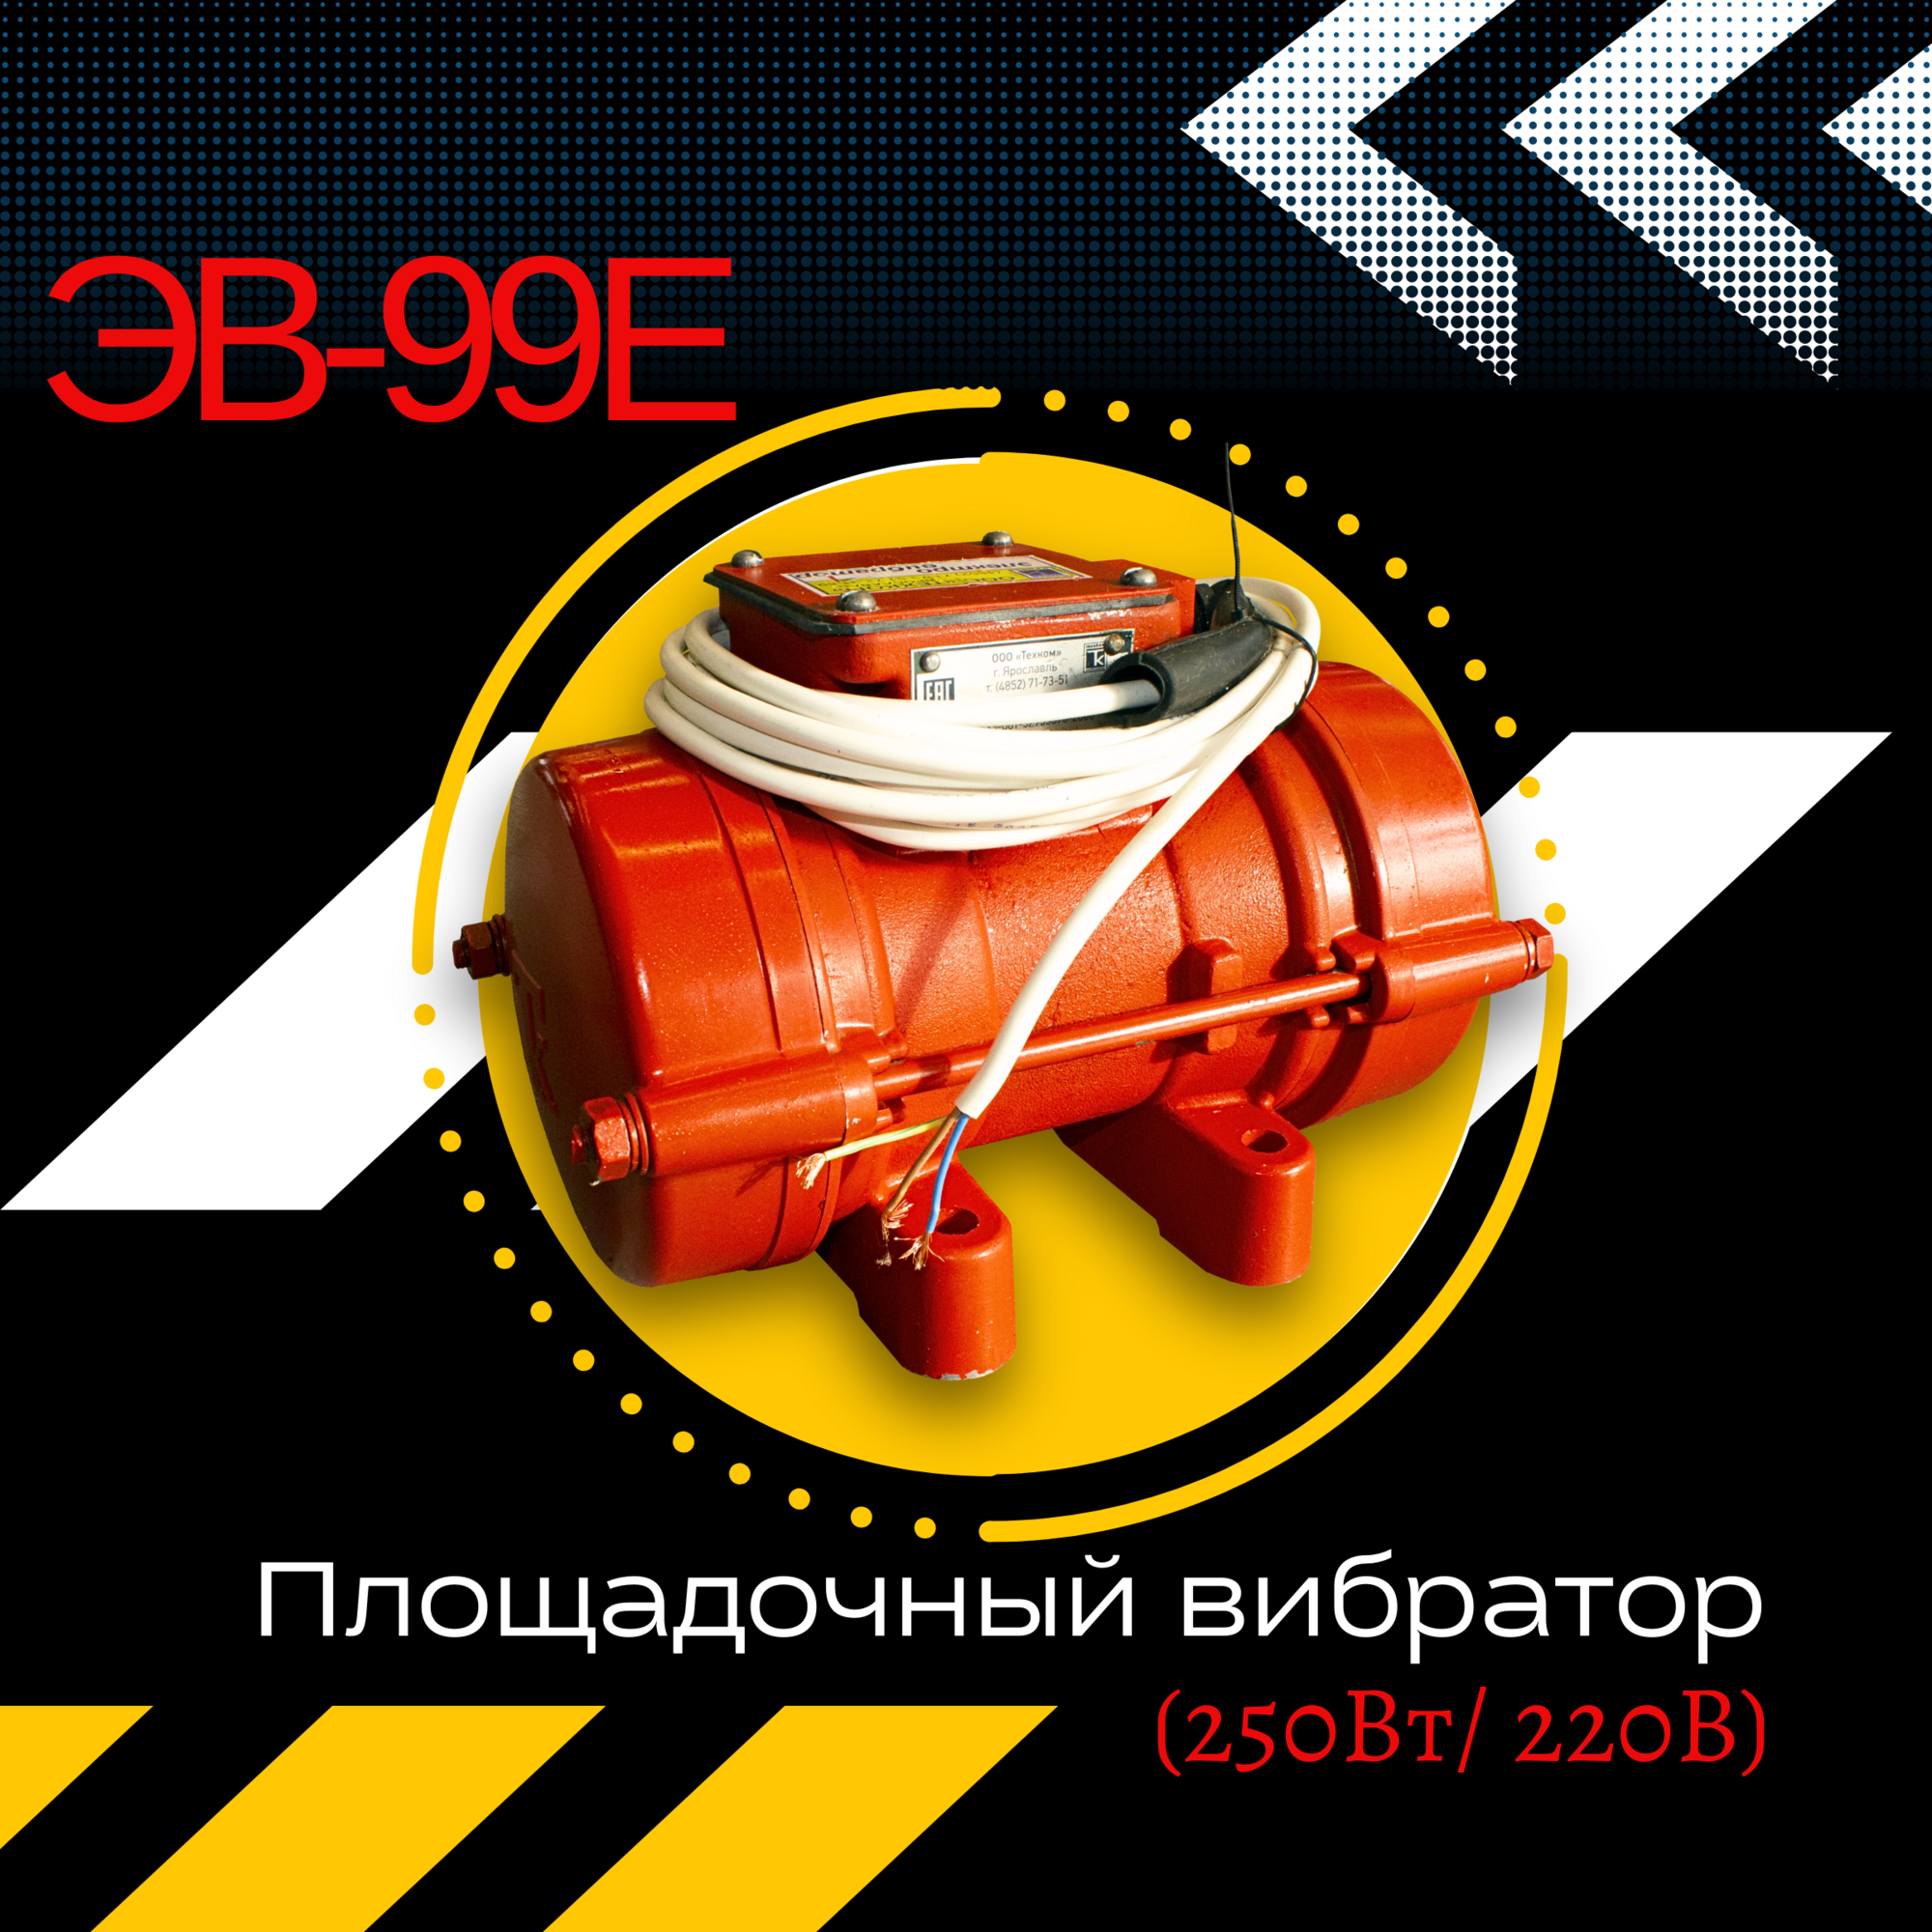 Площадочный вибратор ЭВ-99Е (500Вт/ 220В)